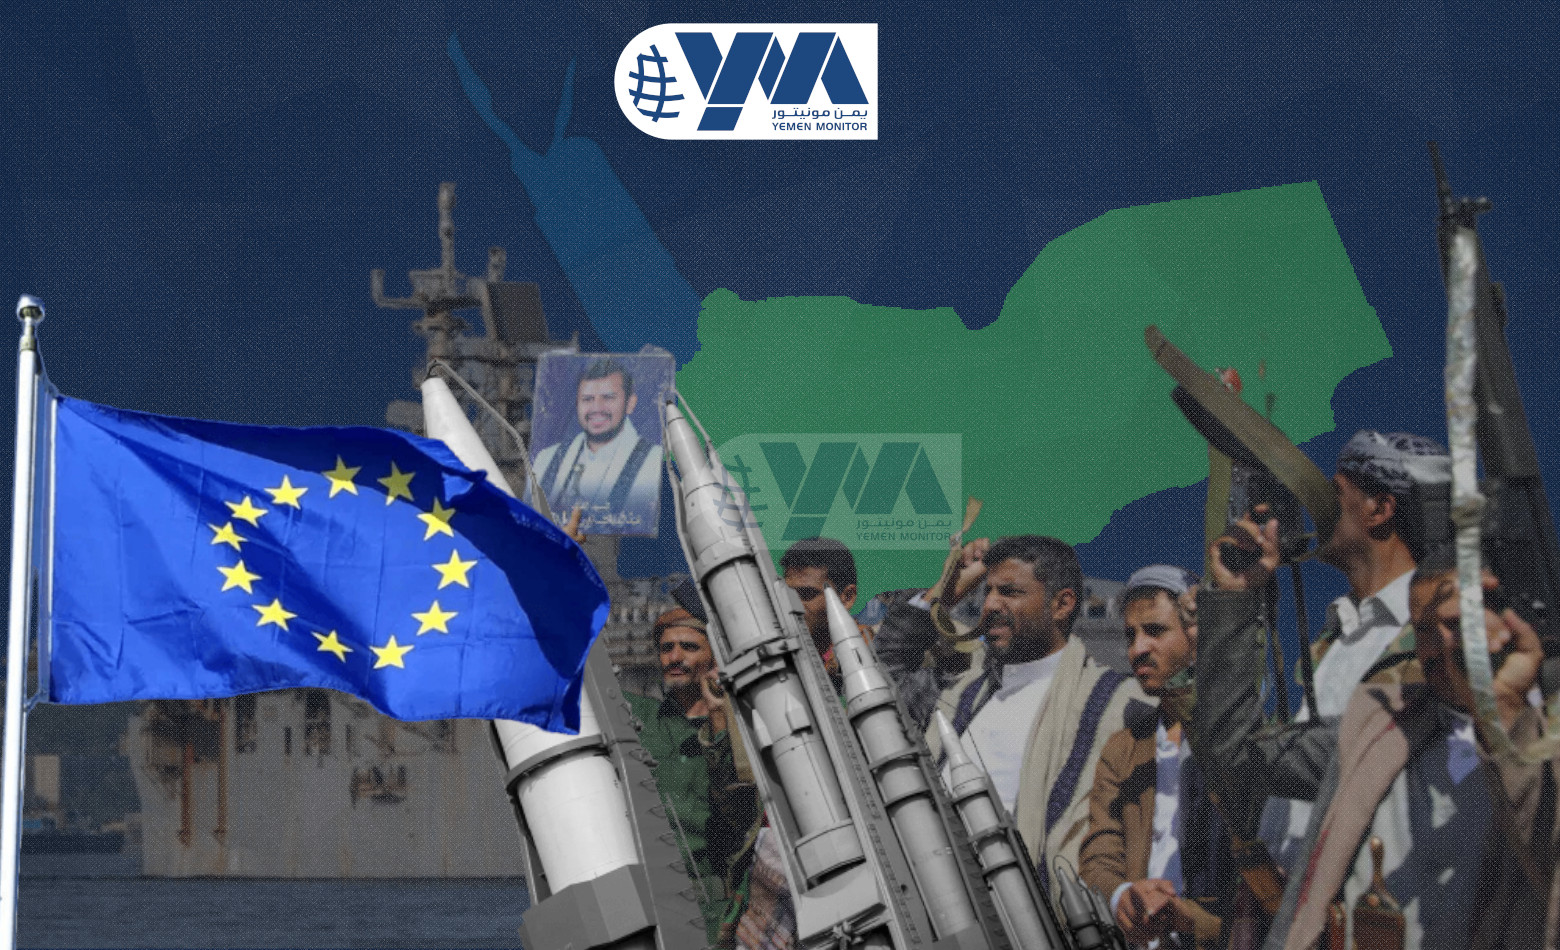 (حصري) مصادر: وفد من البحرية الأوروبية يلتقي الحوثيين في مسقط